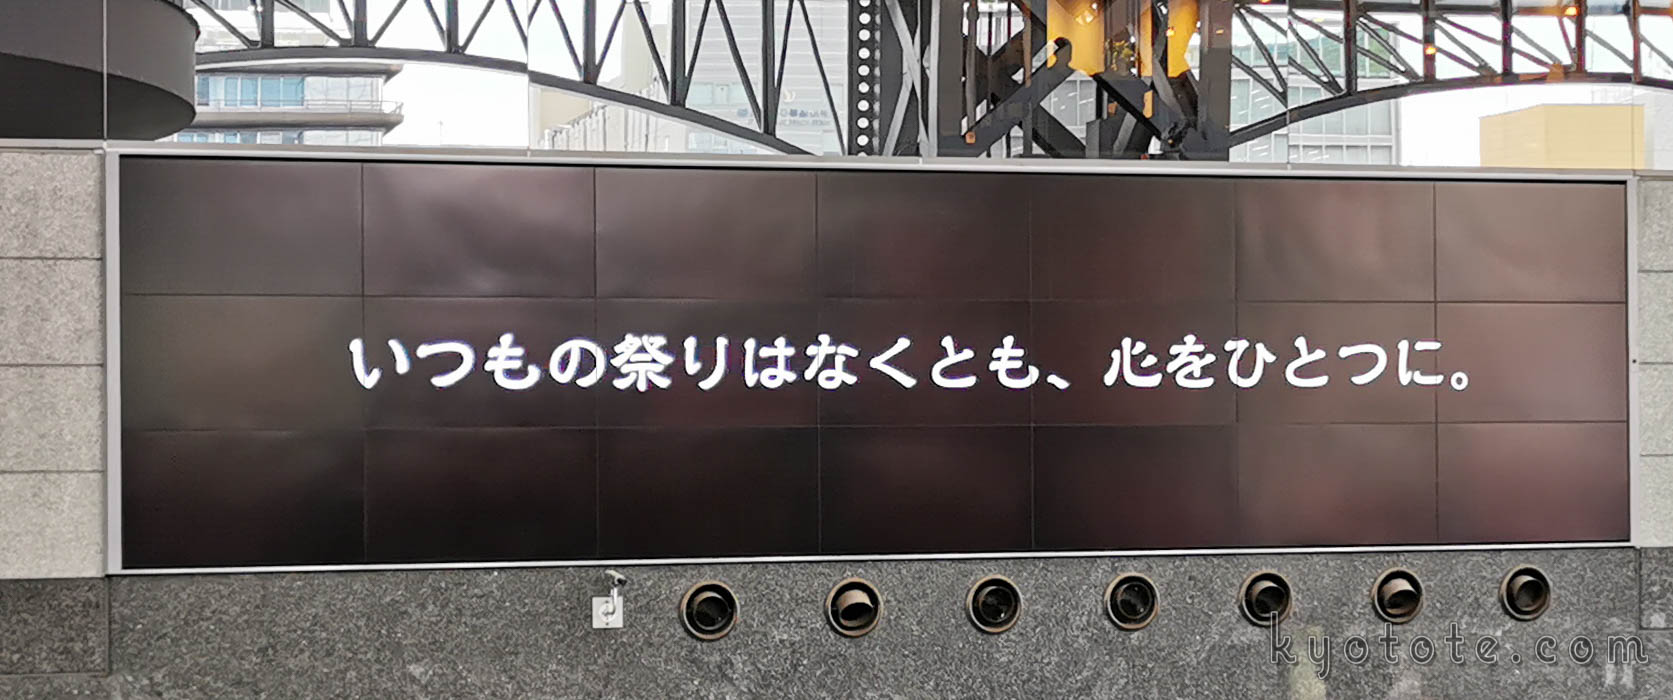 京都駅の大型サイネージで放映された祇園祭の映像